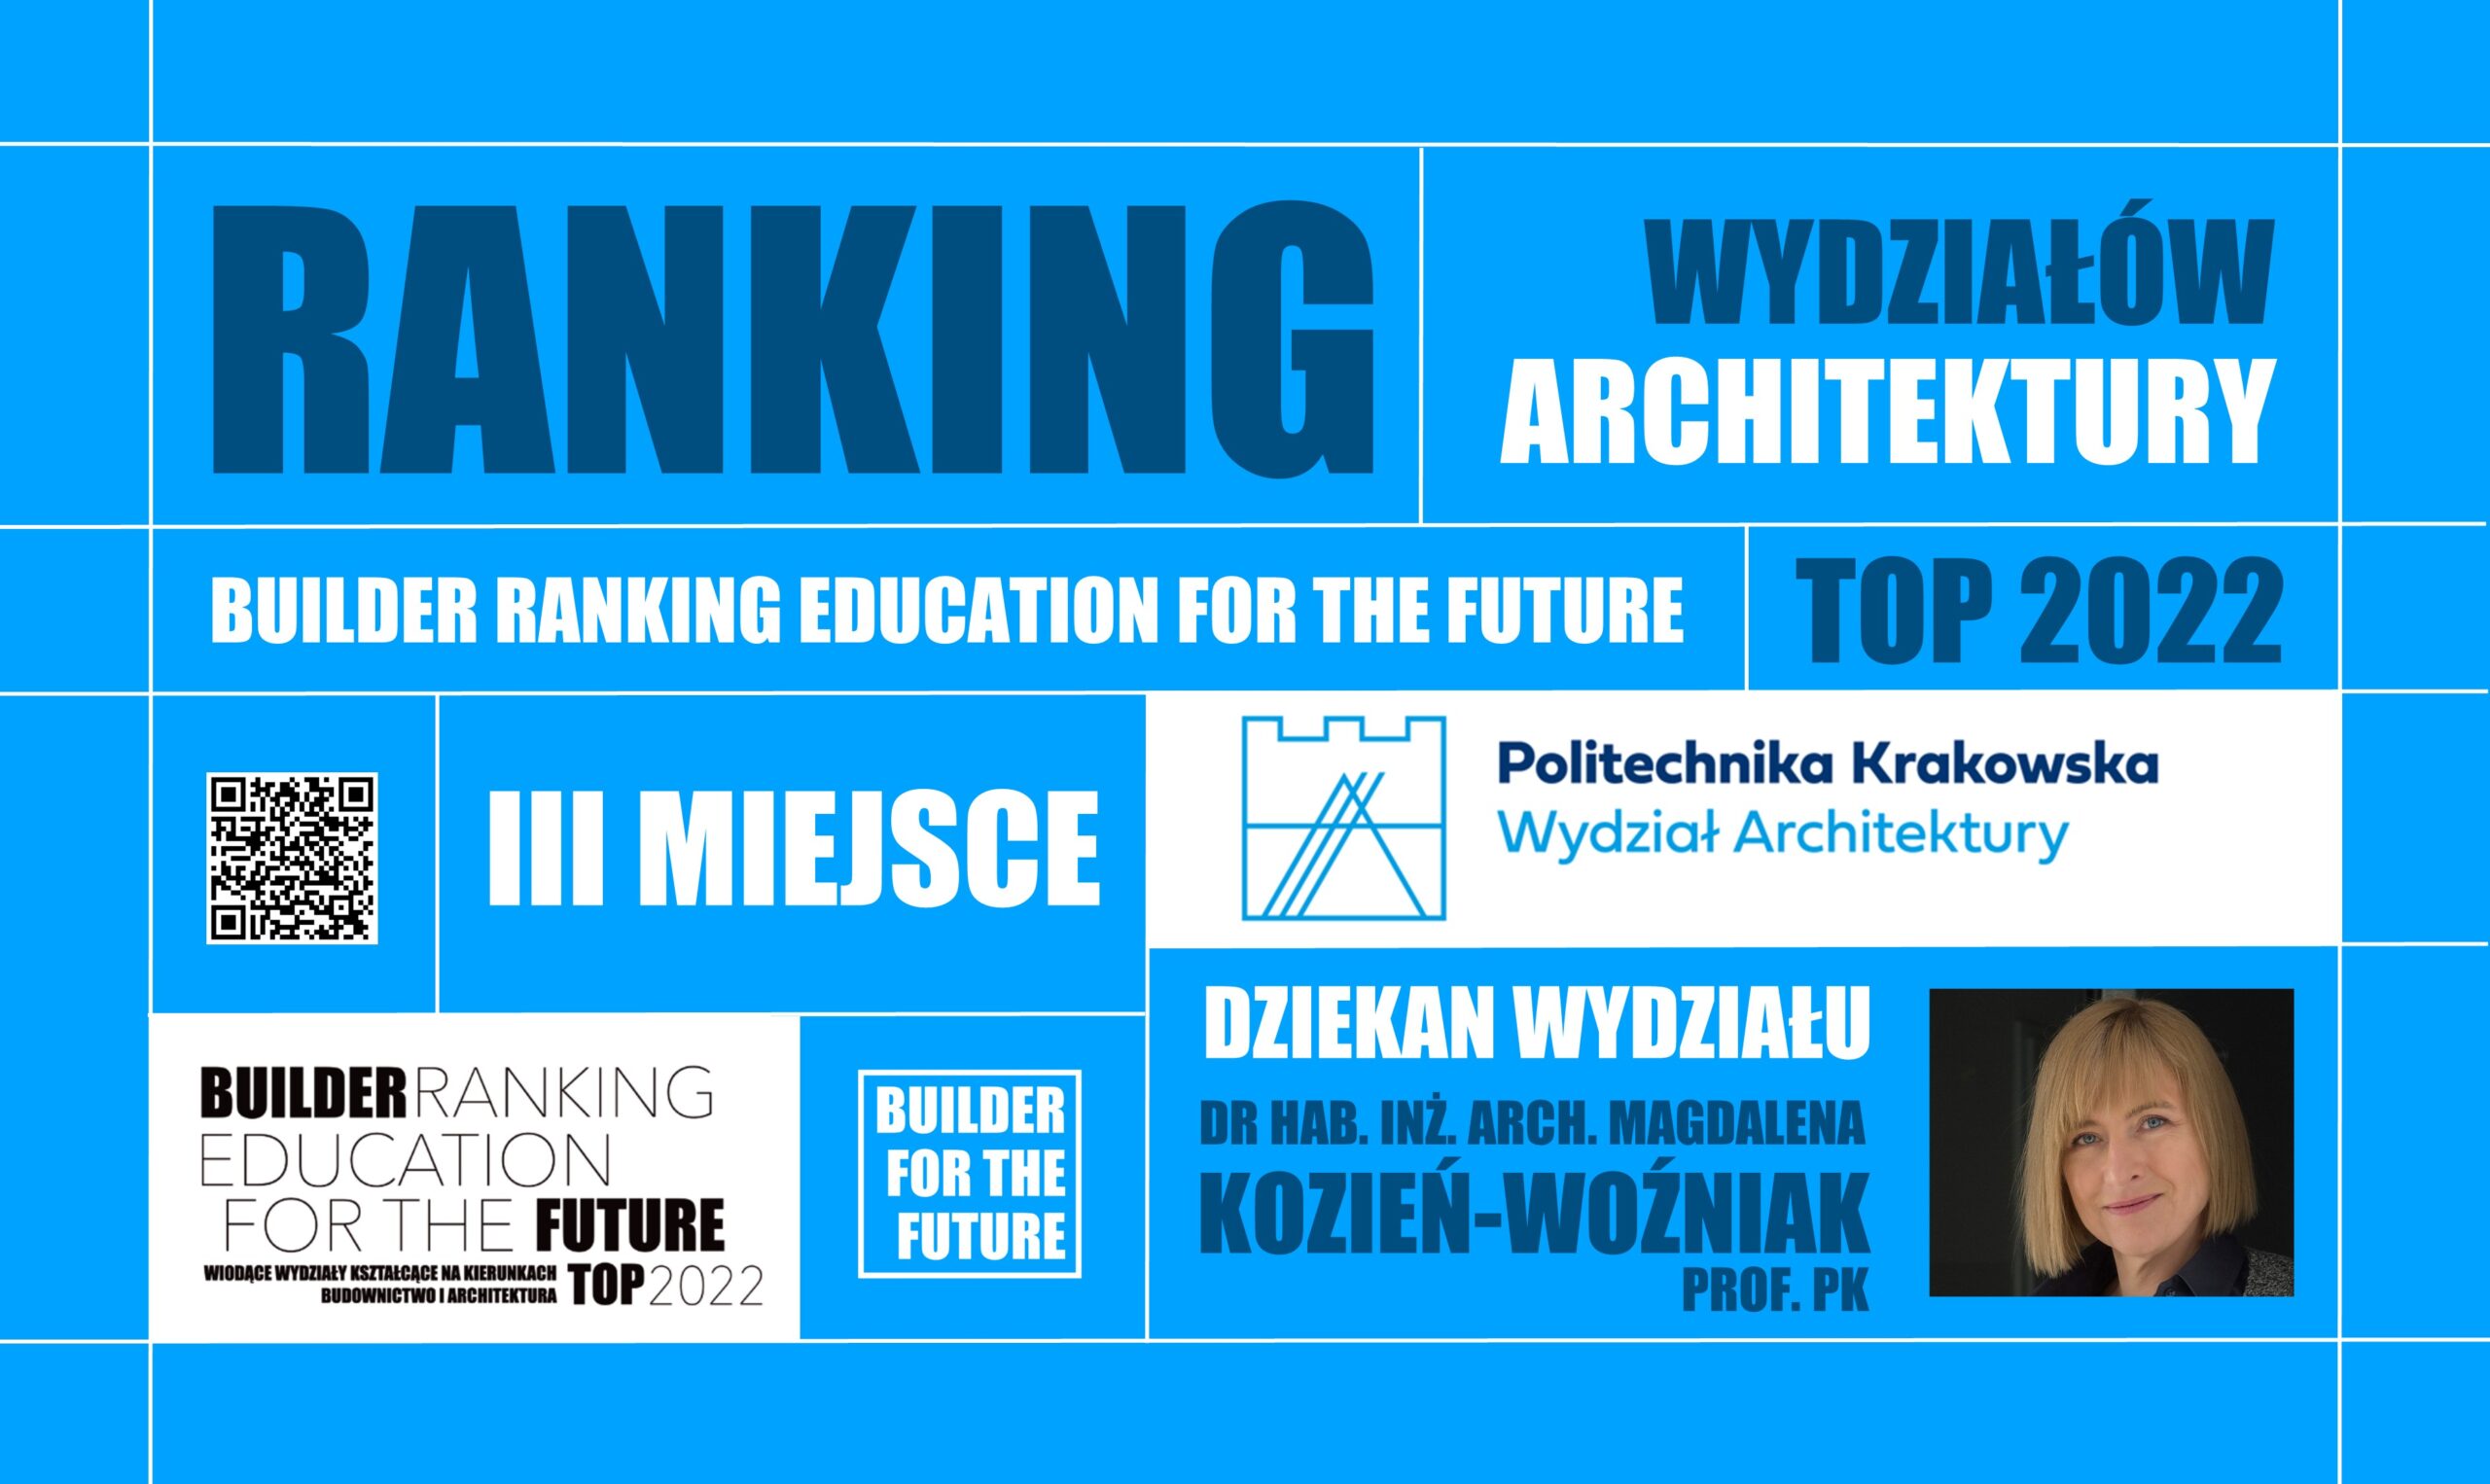 III MIEJSCE W RANKINGU WYDZIAŁÓW ARCHITEKTURY – BUILDER RANKING EDUCATION FOR THE FUTURE TOP 2022